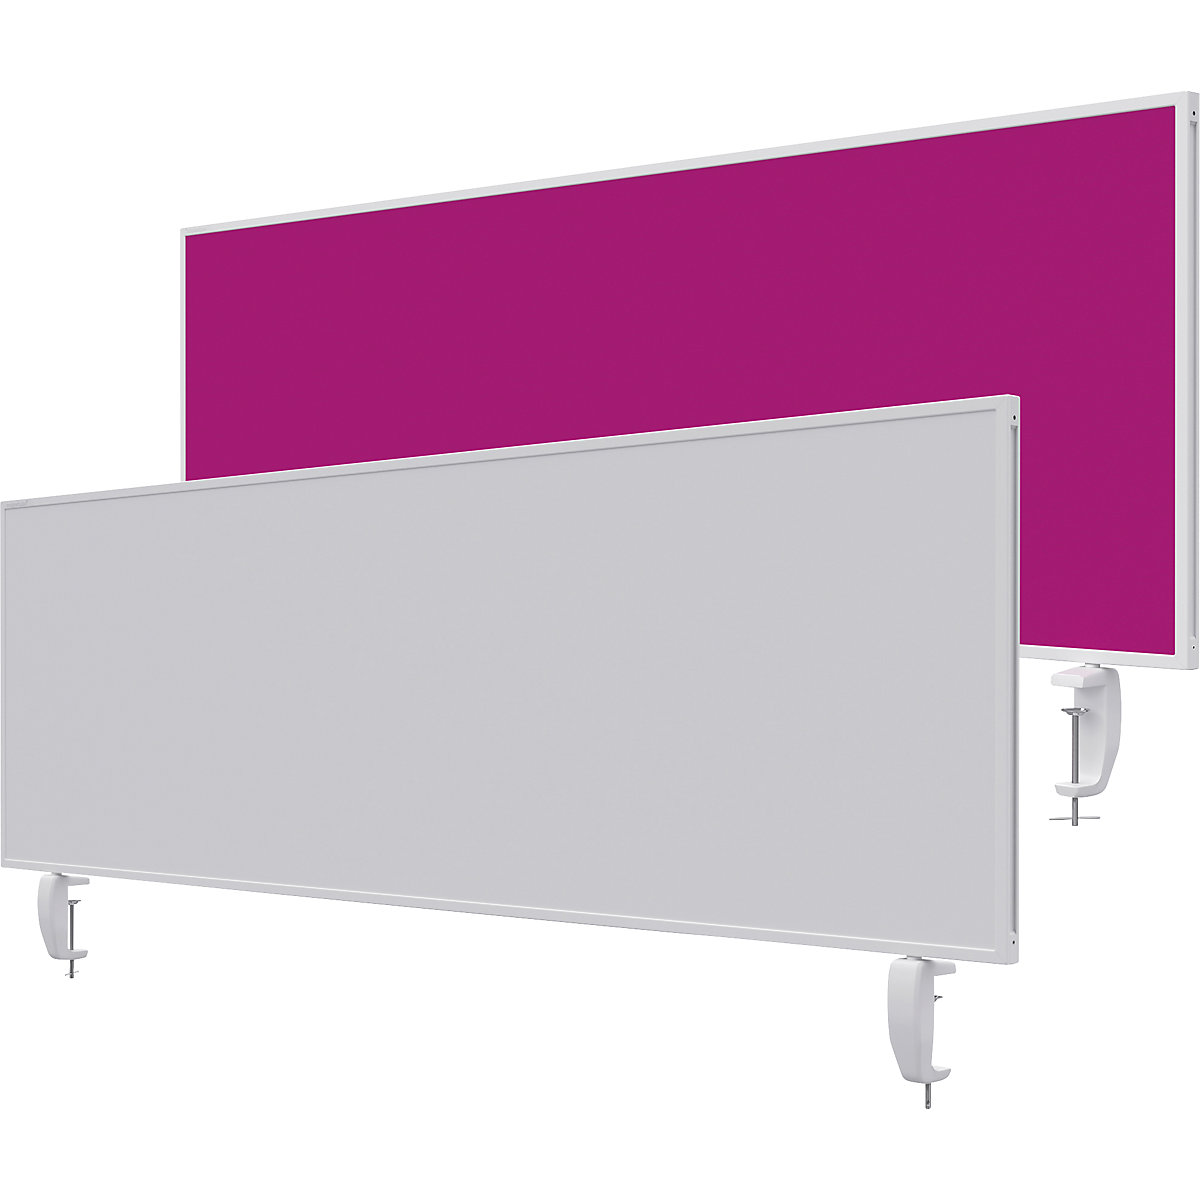 Tischtrennwand VarioPin magnetoplan, Whiteboard/Filz, Breite 1600 mm, pink-26